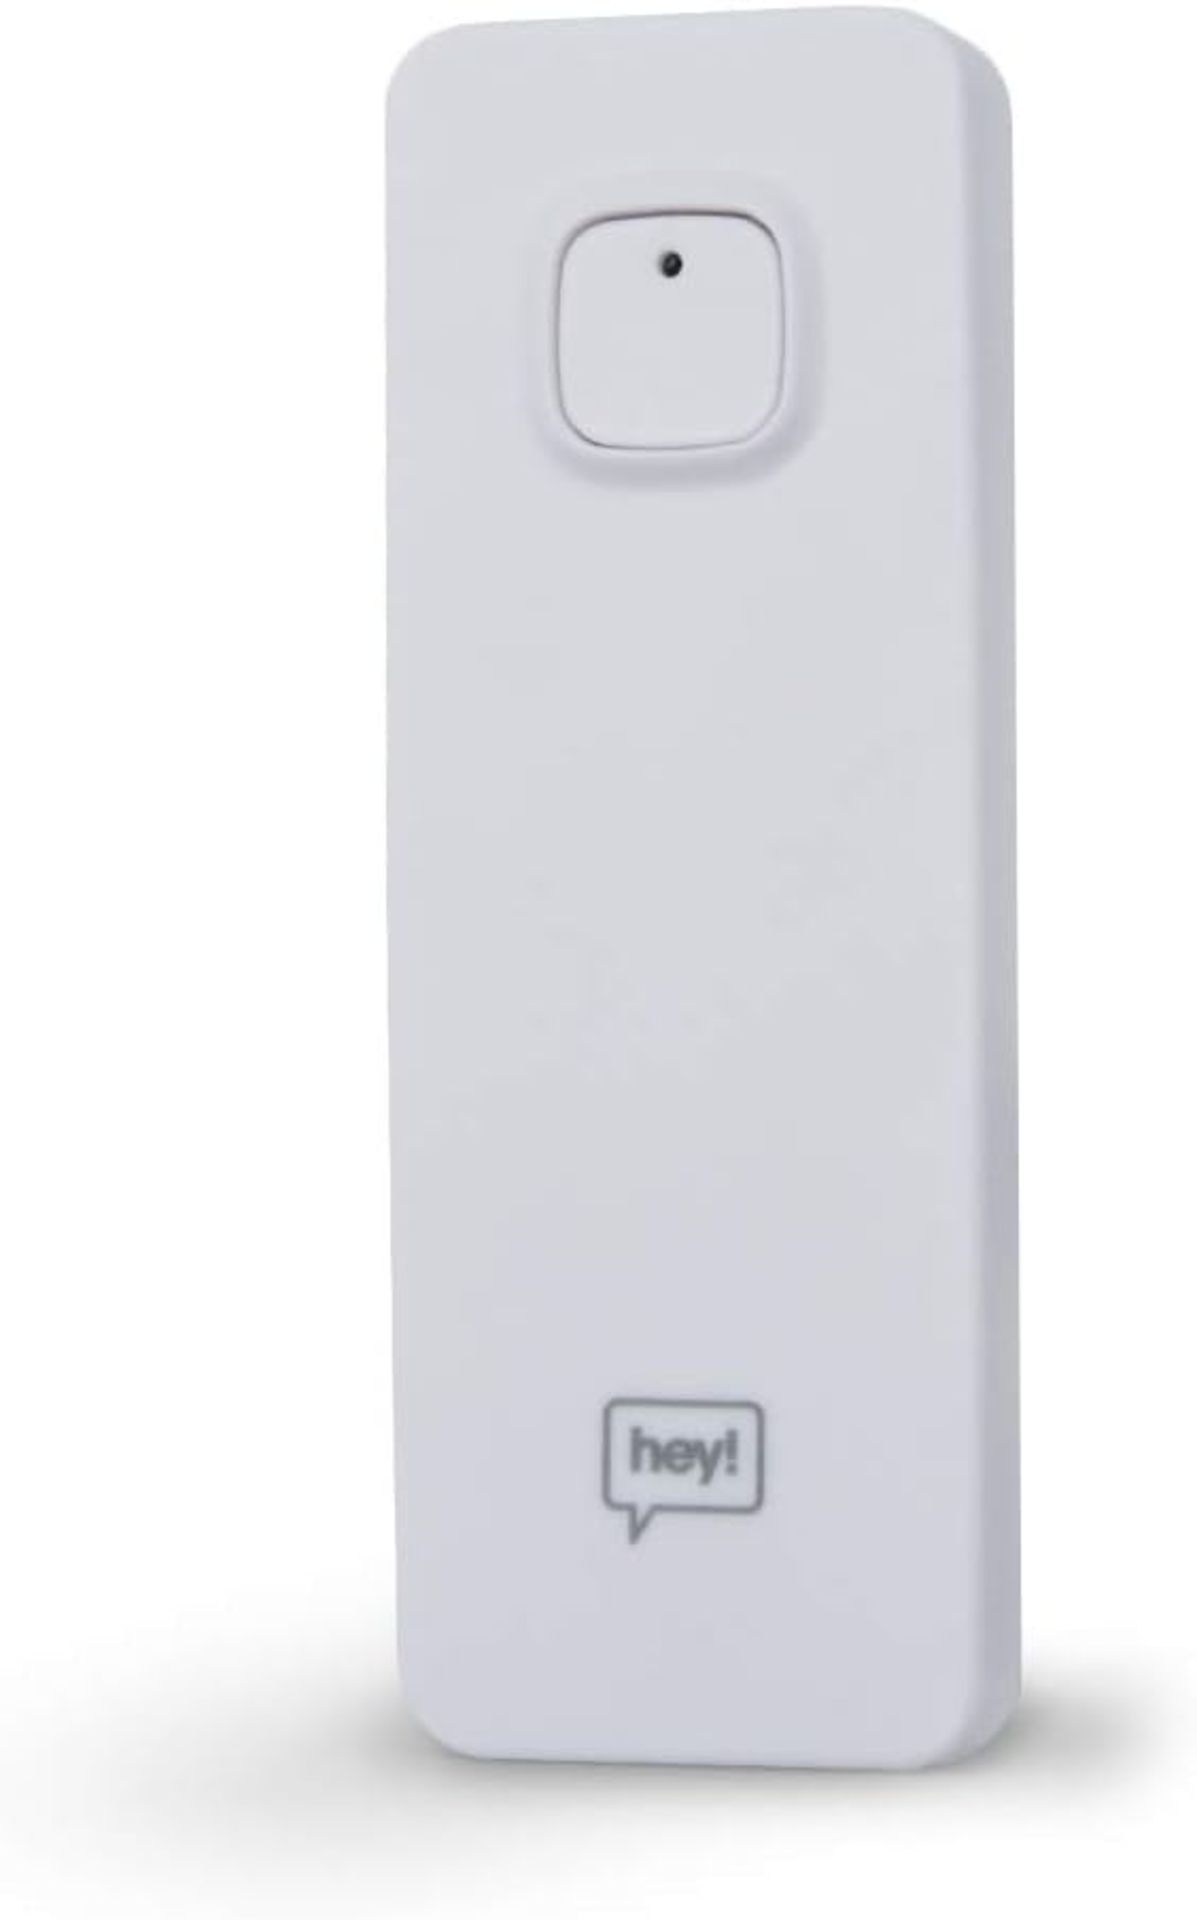 12x NEW & BOXED HEY! SMART Leak Sensor. RRP £19.99 EACH. Indoor Leak Sensor for avoiding - Bild 2 aus 2